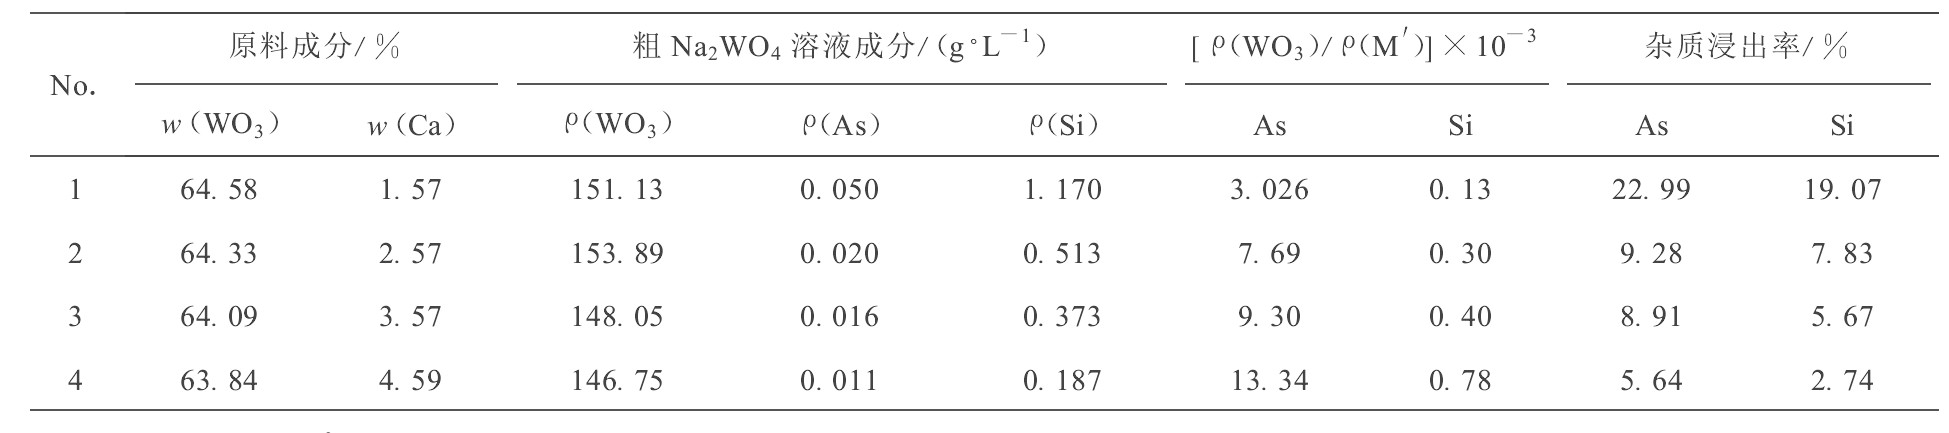 表3 NaOH分解不同钨矿物原料时杂质As、Si的浸出率及粗钨酸钠溶液成分*Table 3 Results of NaOH decomposition of tungsten concentrate with different Ca content